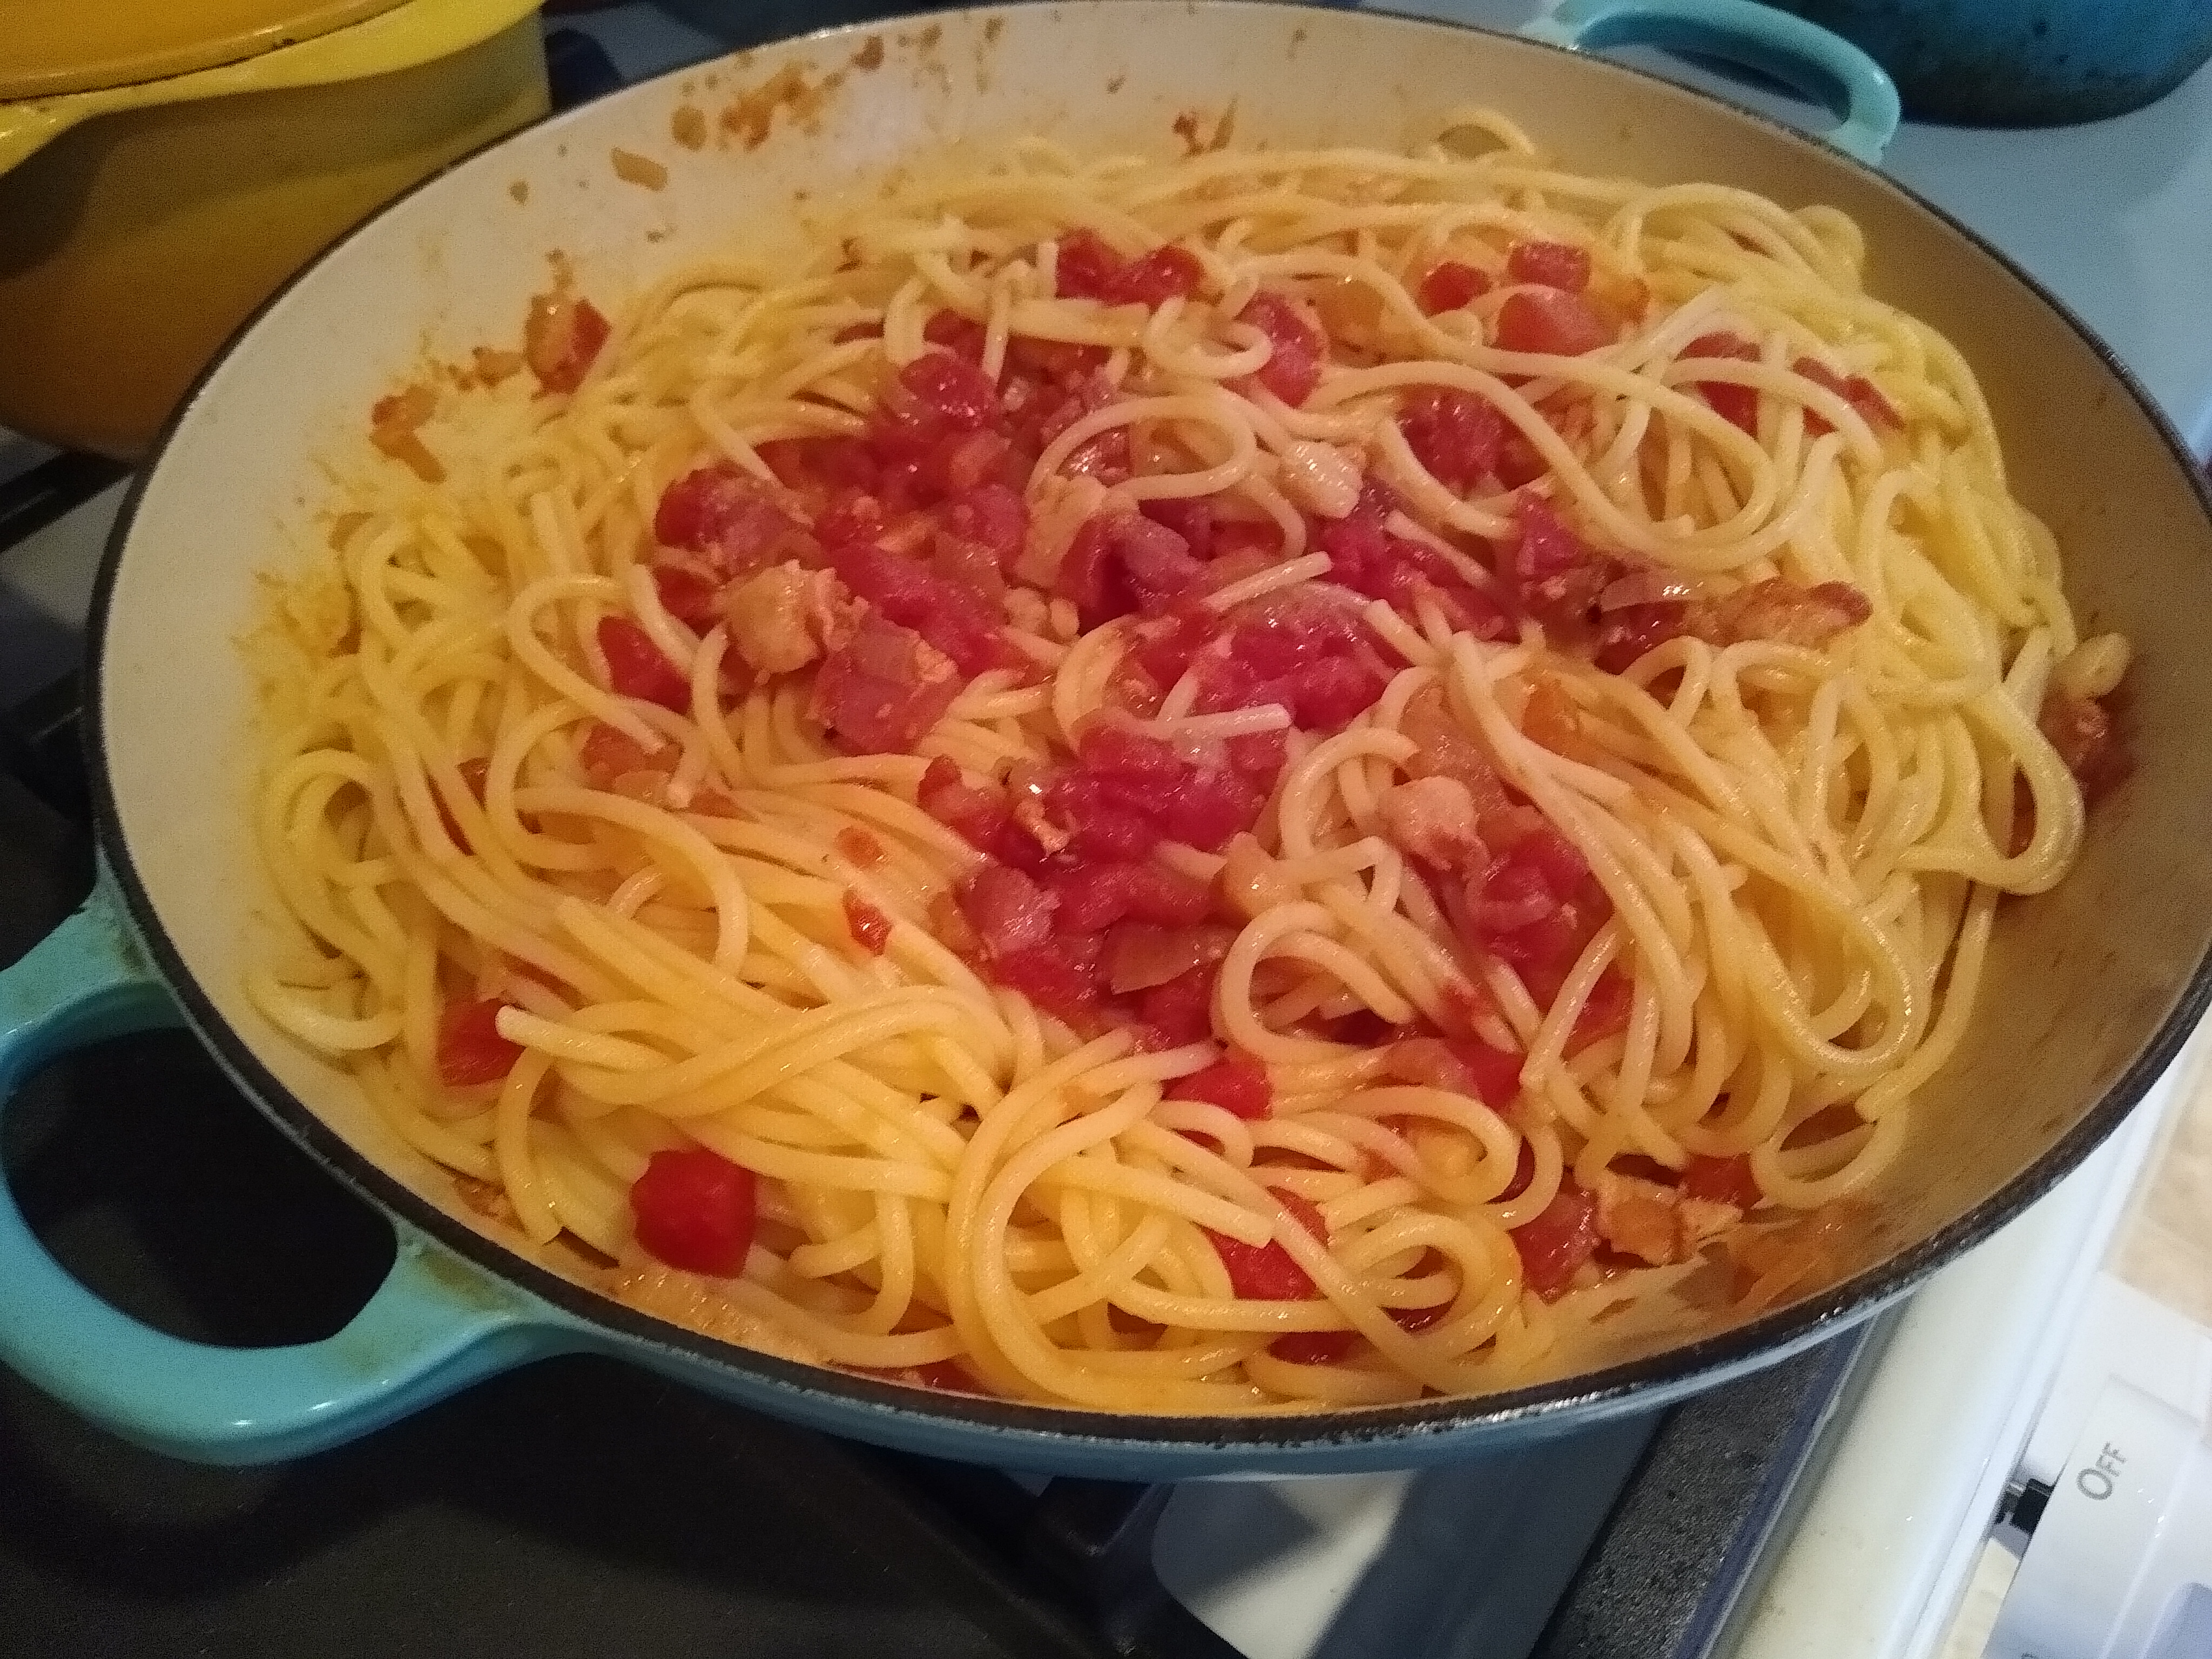 Spaghett all'Amatriciana